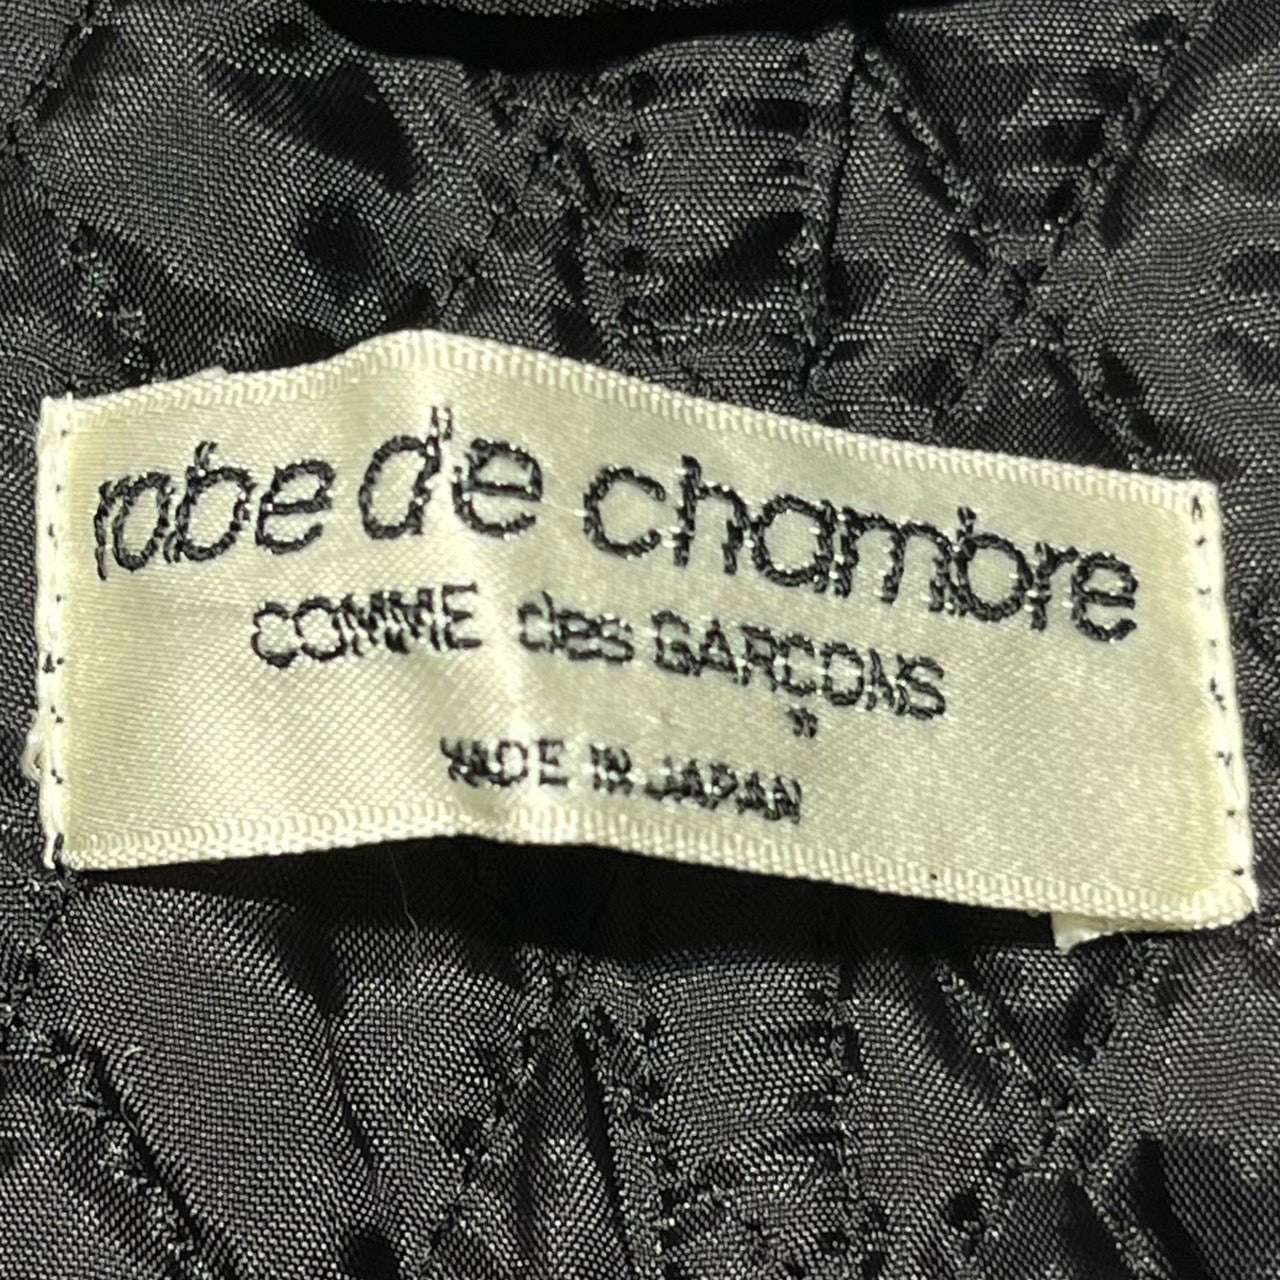 robe de chambre COMME des GARCONS(ローブドシャンブルコムデギャルソン) 80'sキルティングベスト RV-110010 表記なし(S～M程度) ブラック AD1989